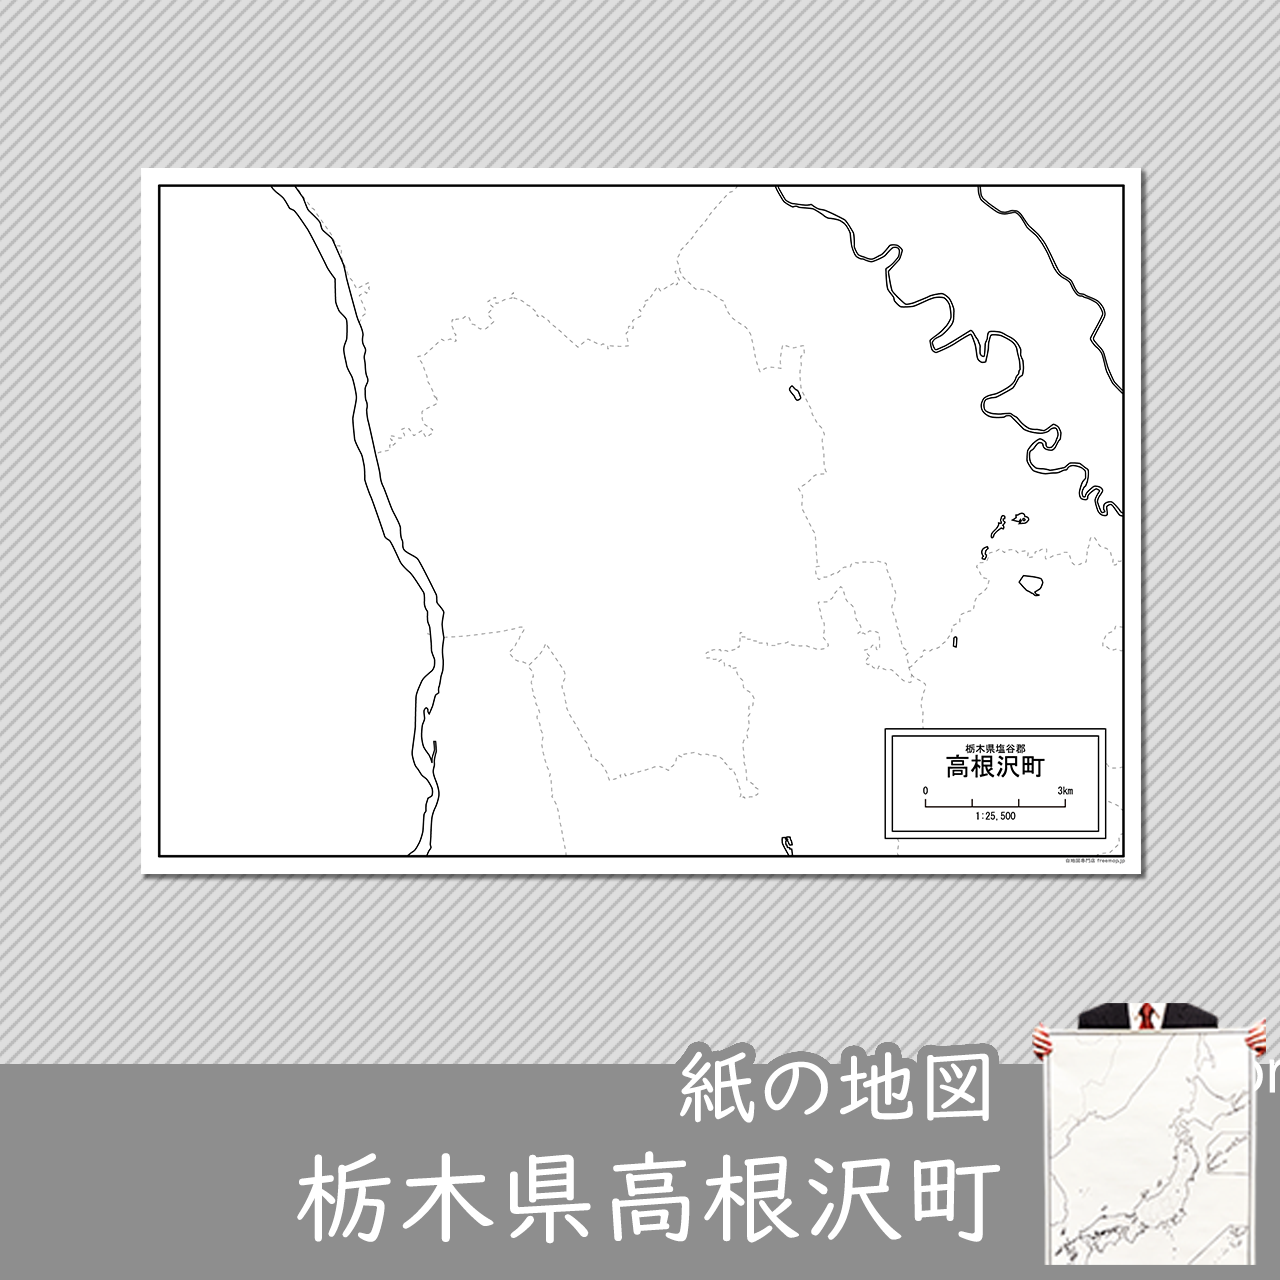 高根沢町の紙の白地図のサムネイル